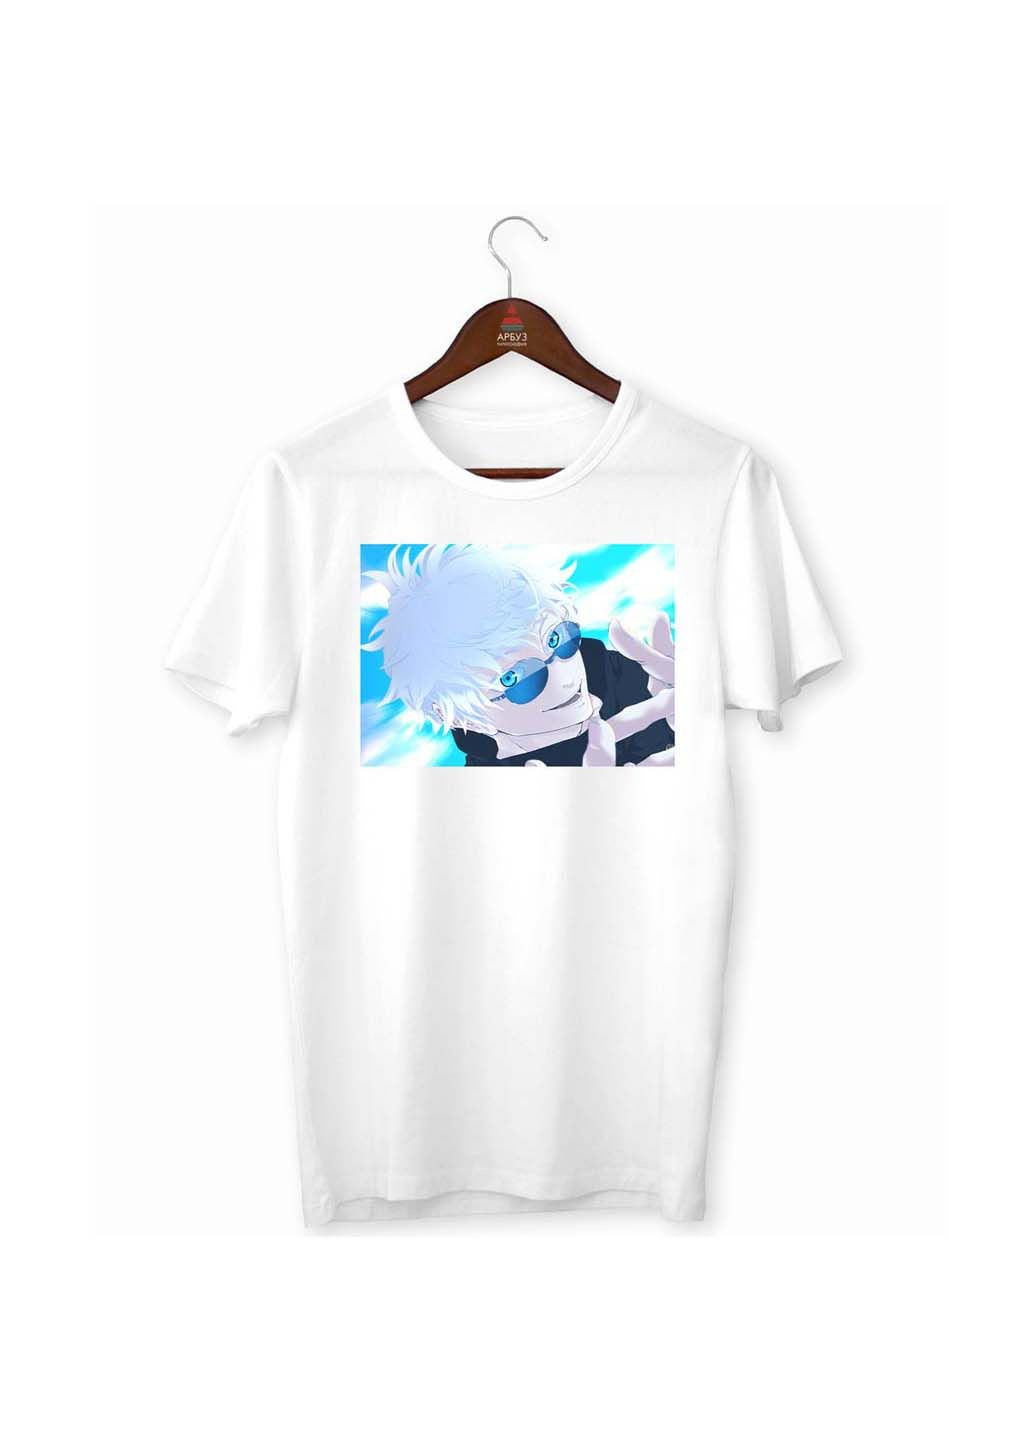 Белая футболка jujutsu kaisen магическая битва satoru gojo сатору годжо синий Кавун